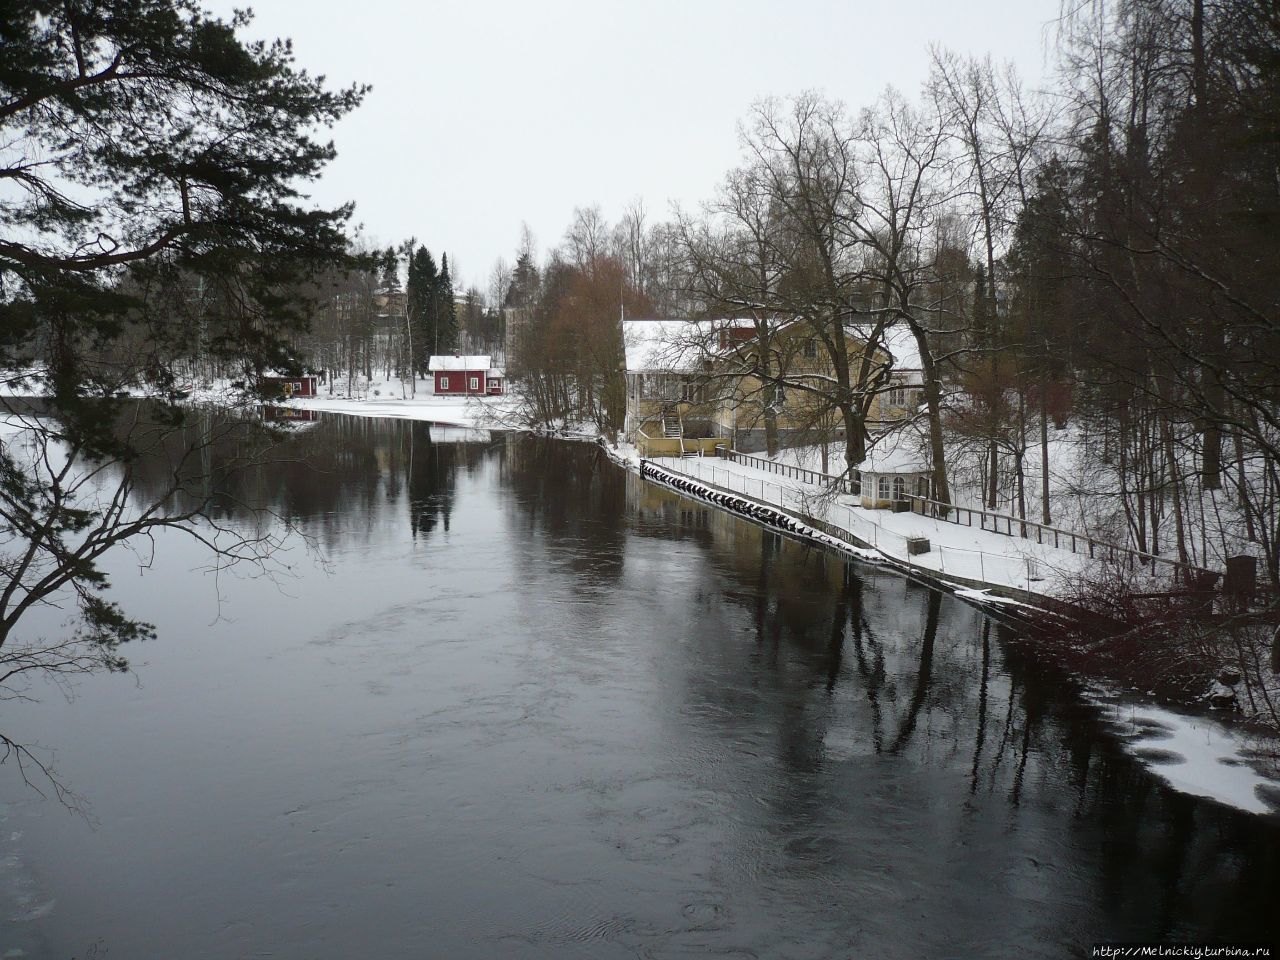 Ворота в Озерную Финляндию Хейнола, Финляндия